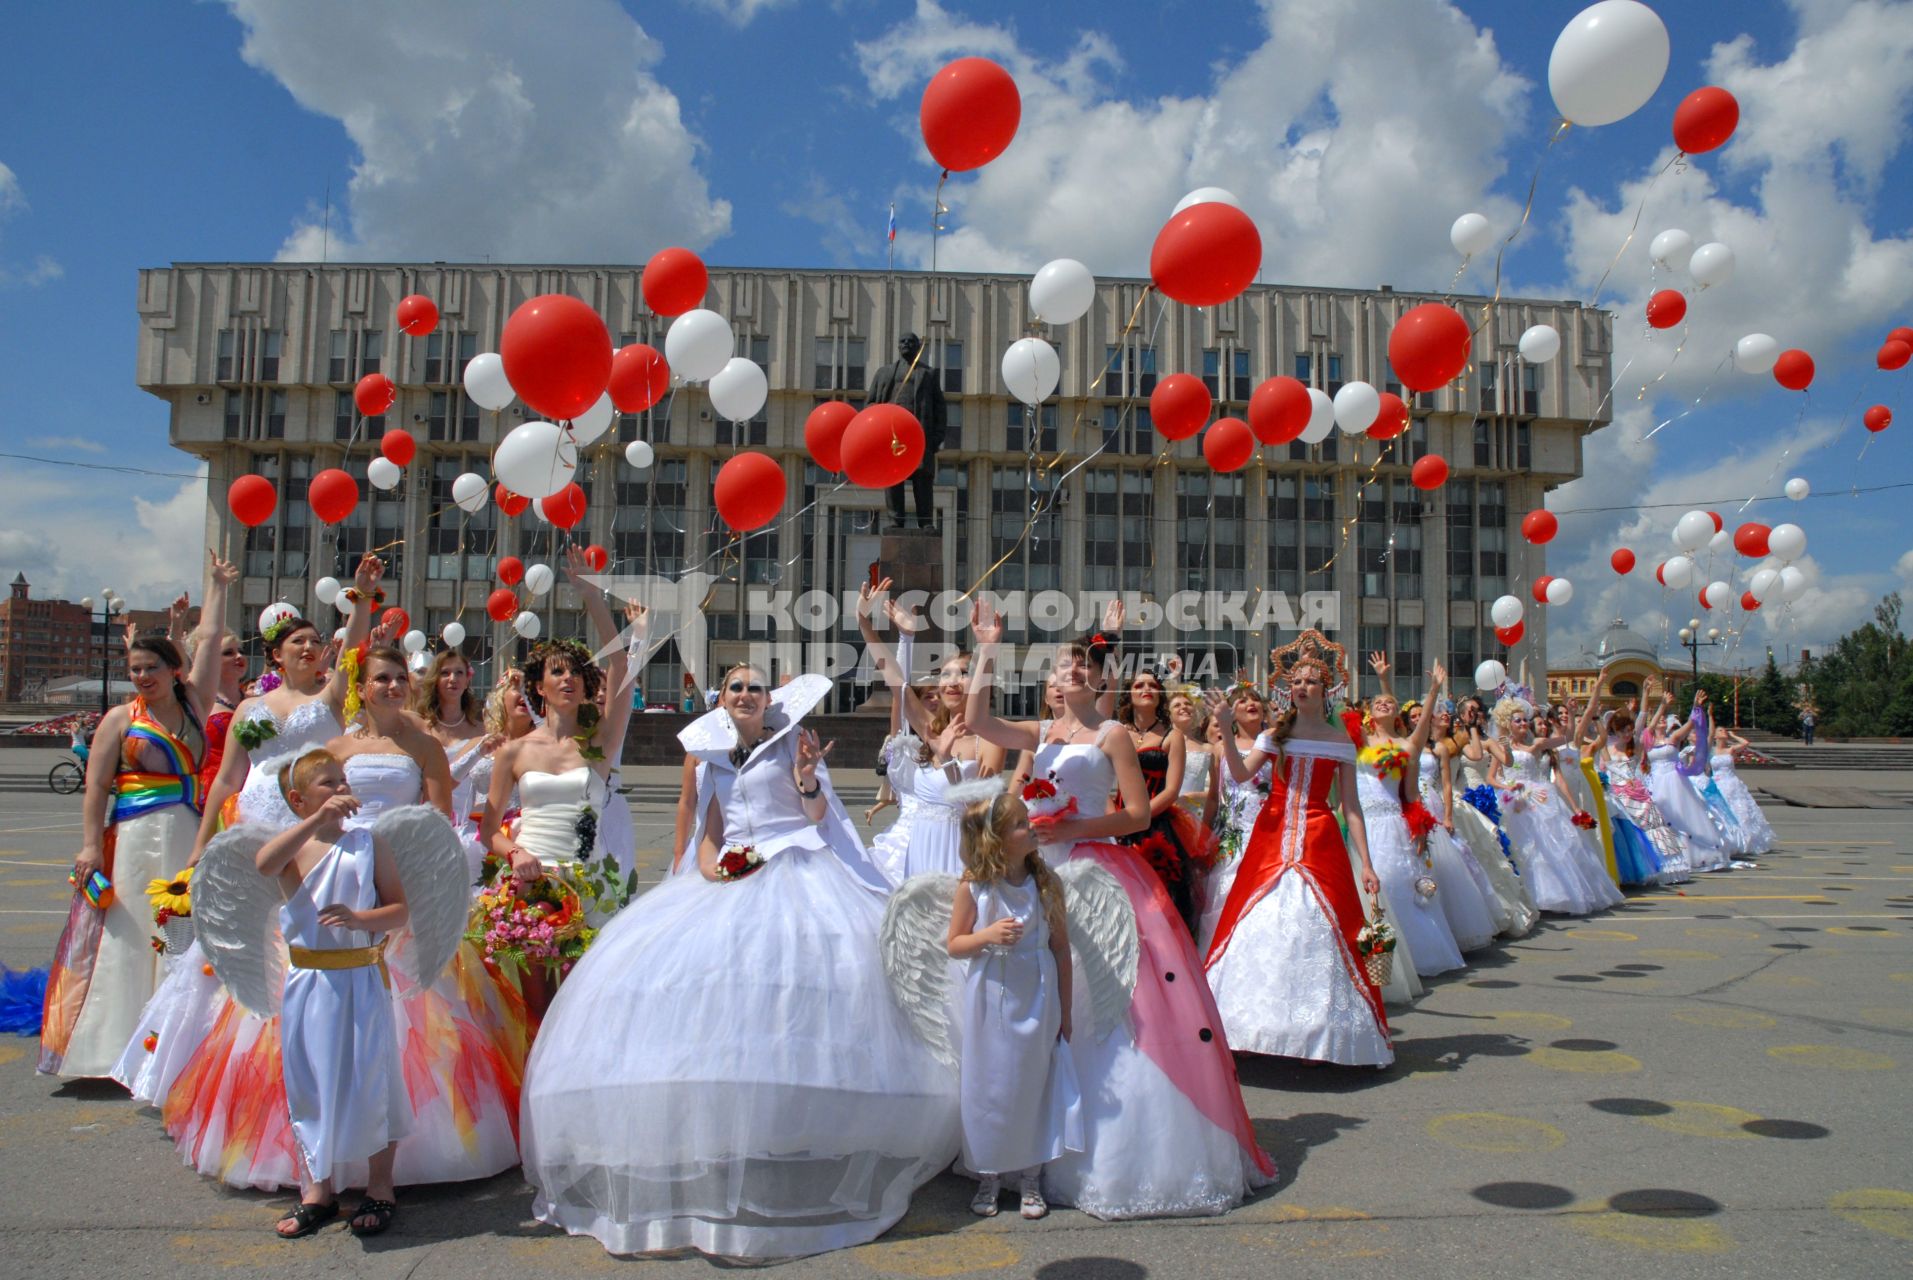 Парад невест в Туле. Невесты выпускают надувные шарики.